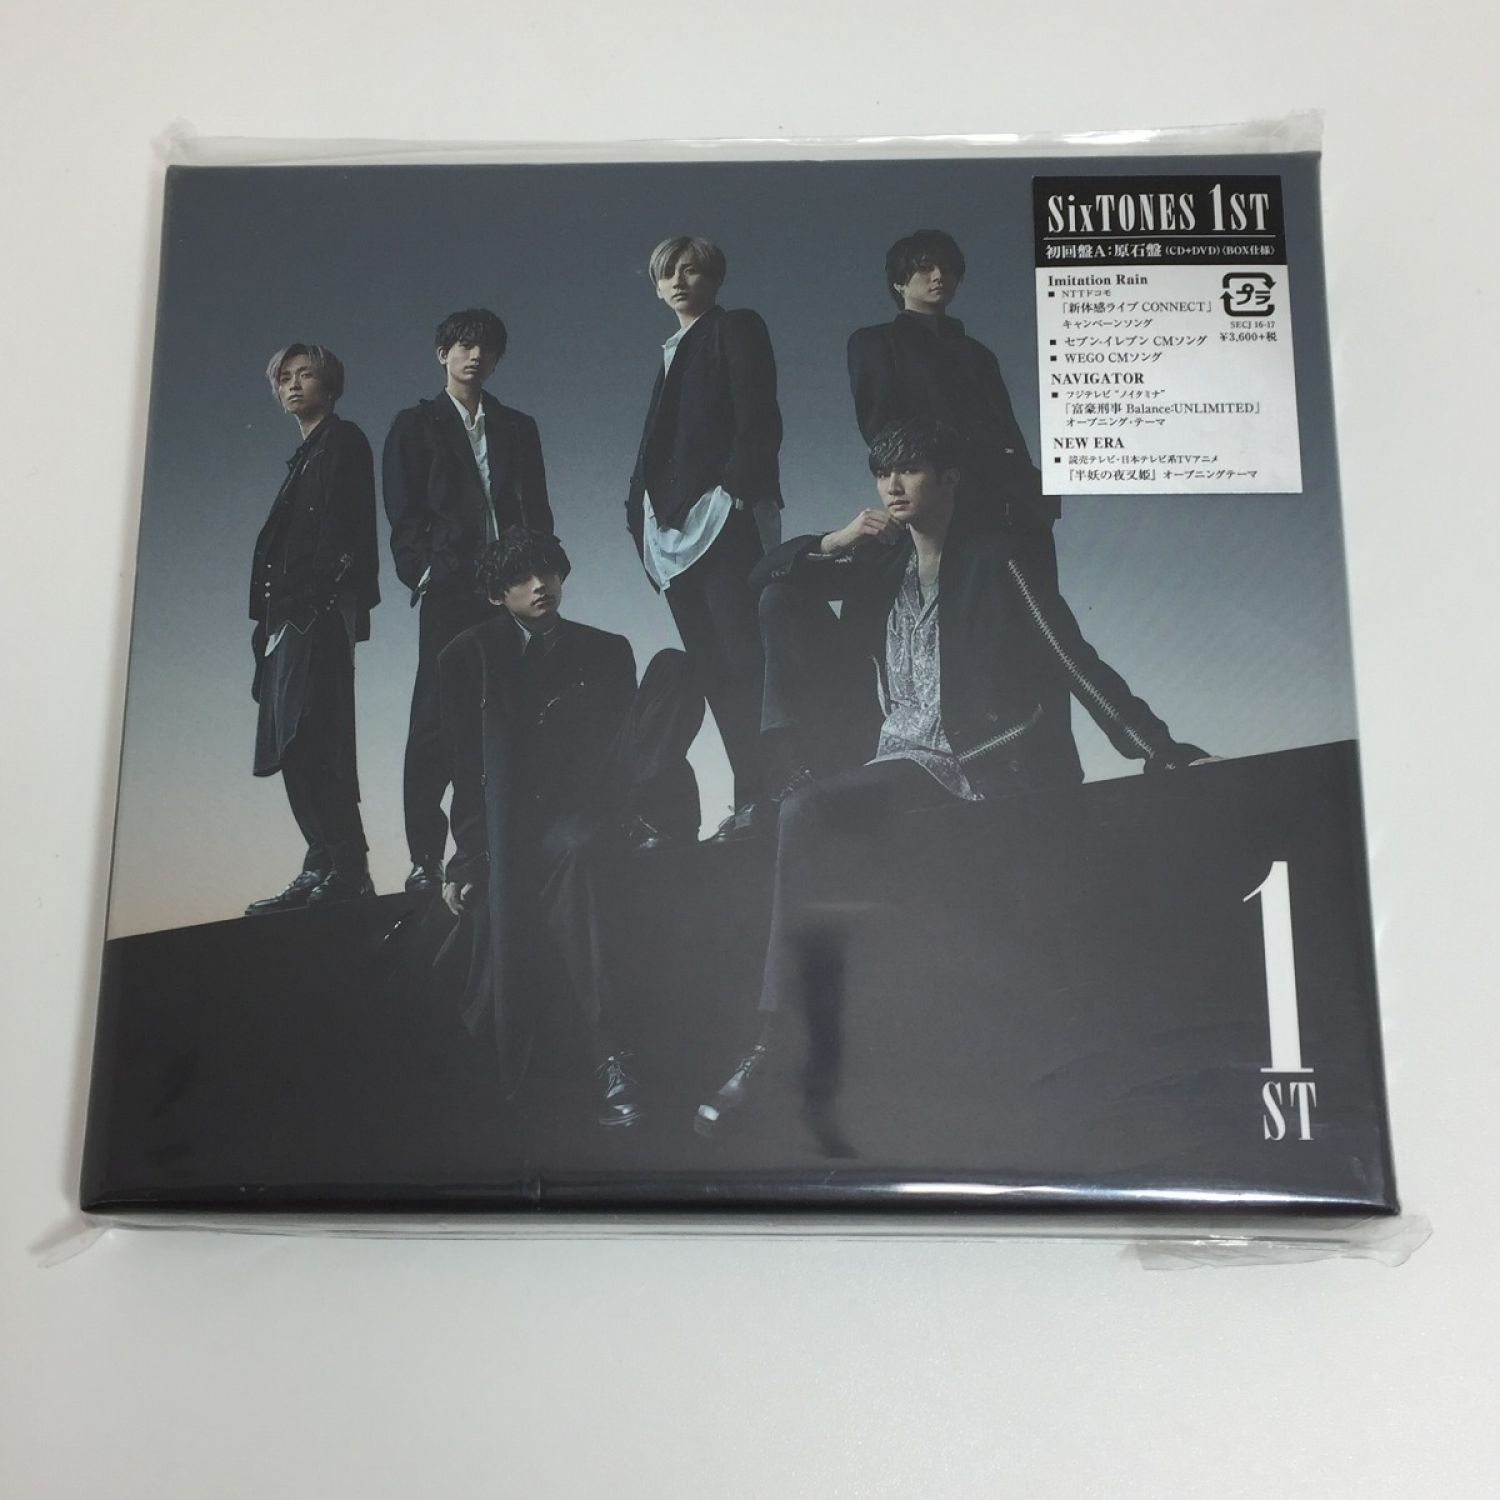 中古】 SixTONES 1ST 初回盤A:原石盤(CD+DVD)アルバム 中古品 Bランク ...